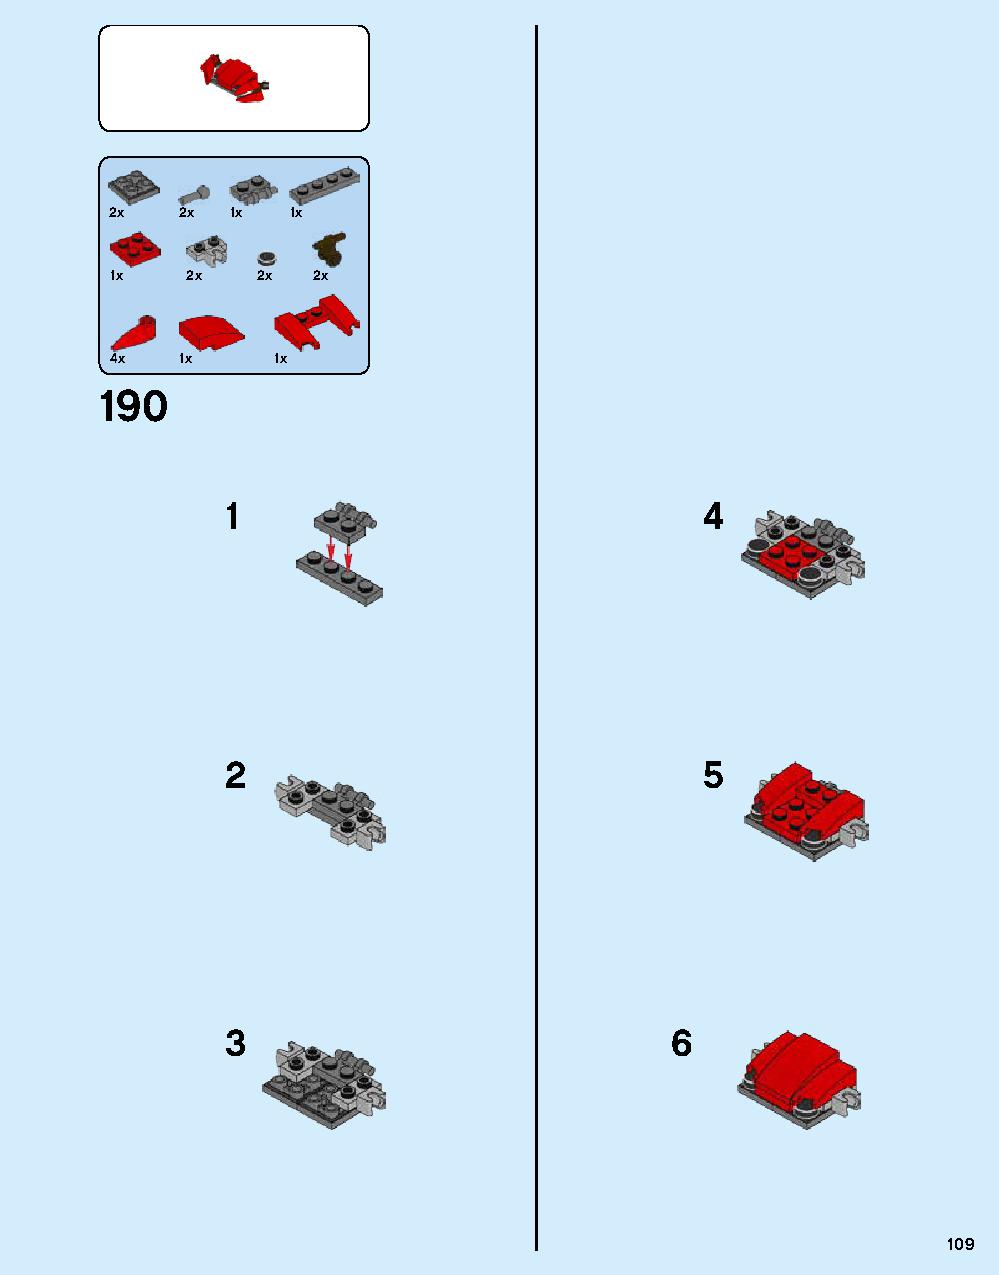 ニンジャゴー シティ 70620 レゴの商品情報 レゴの説明書・組立方法 109 page